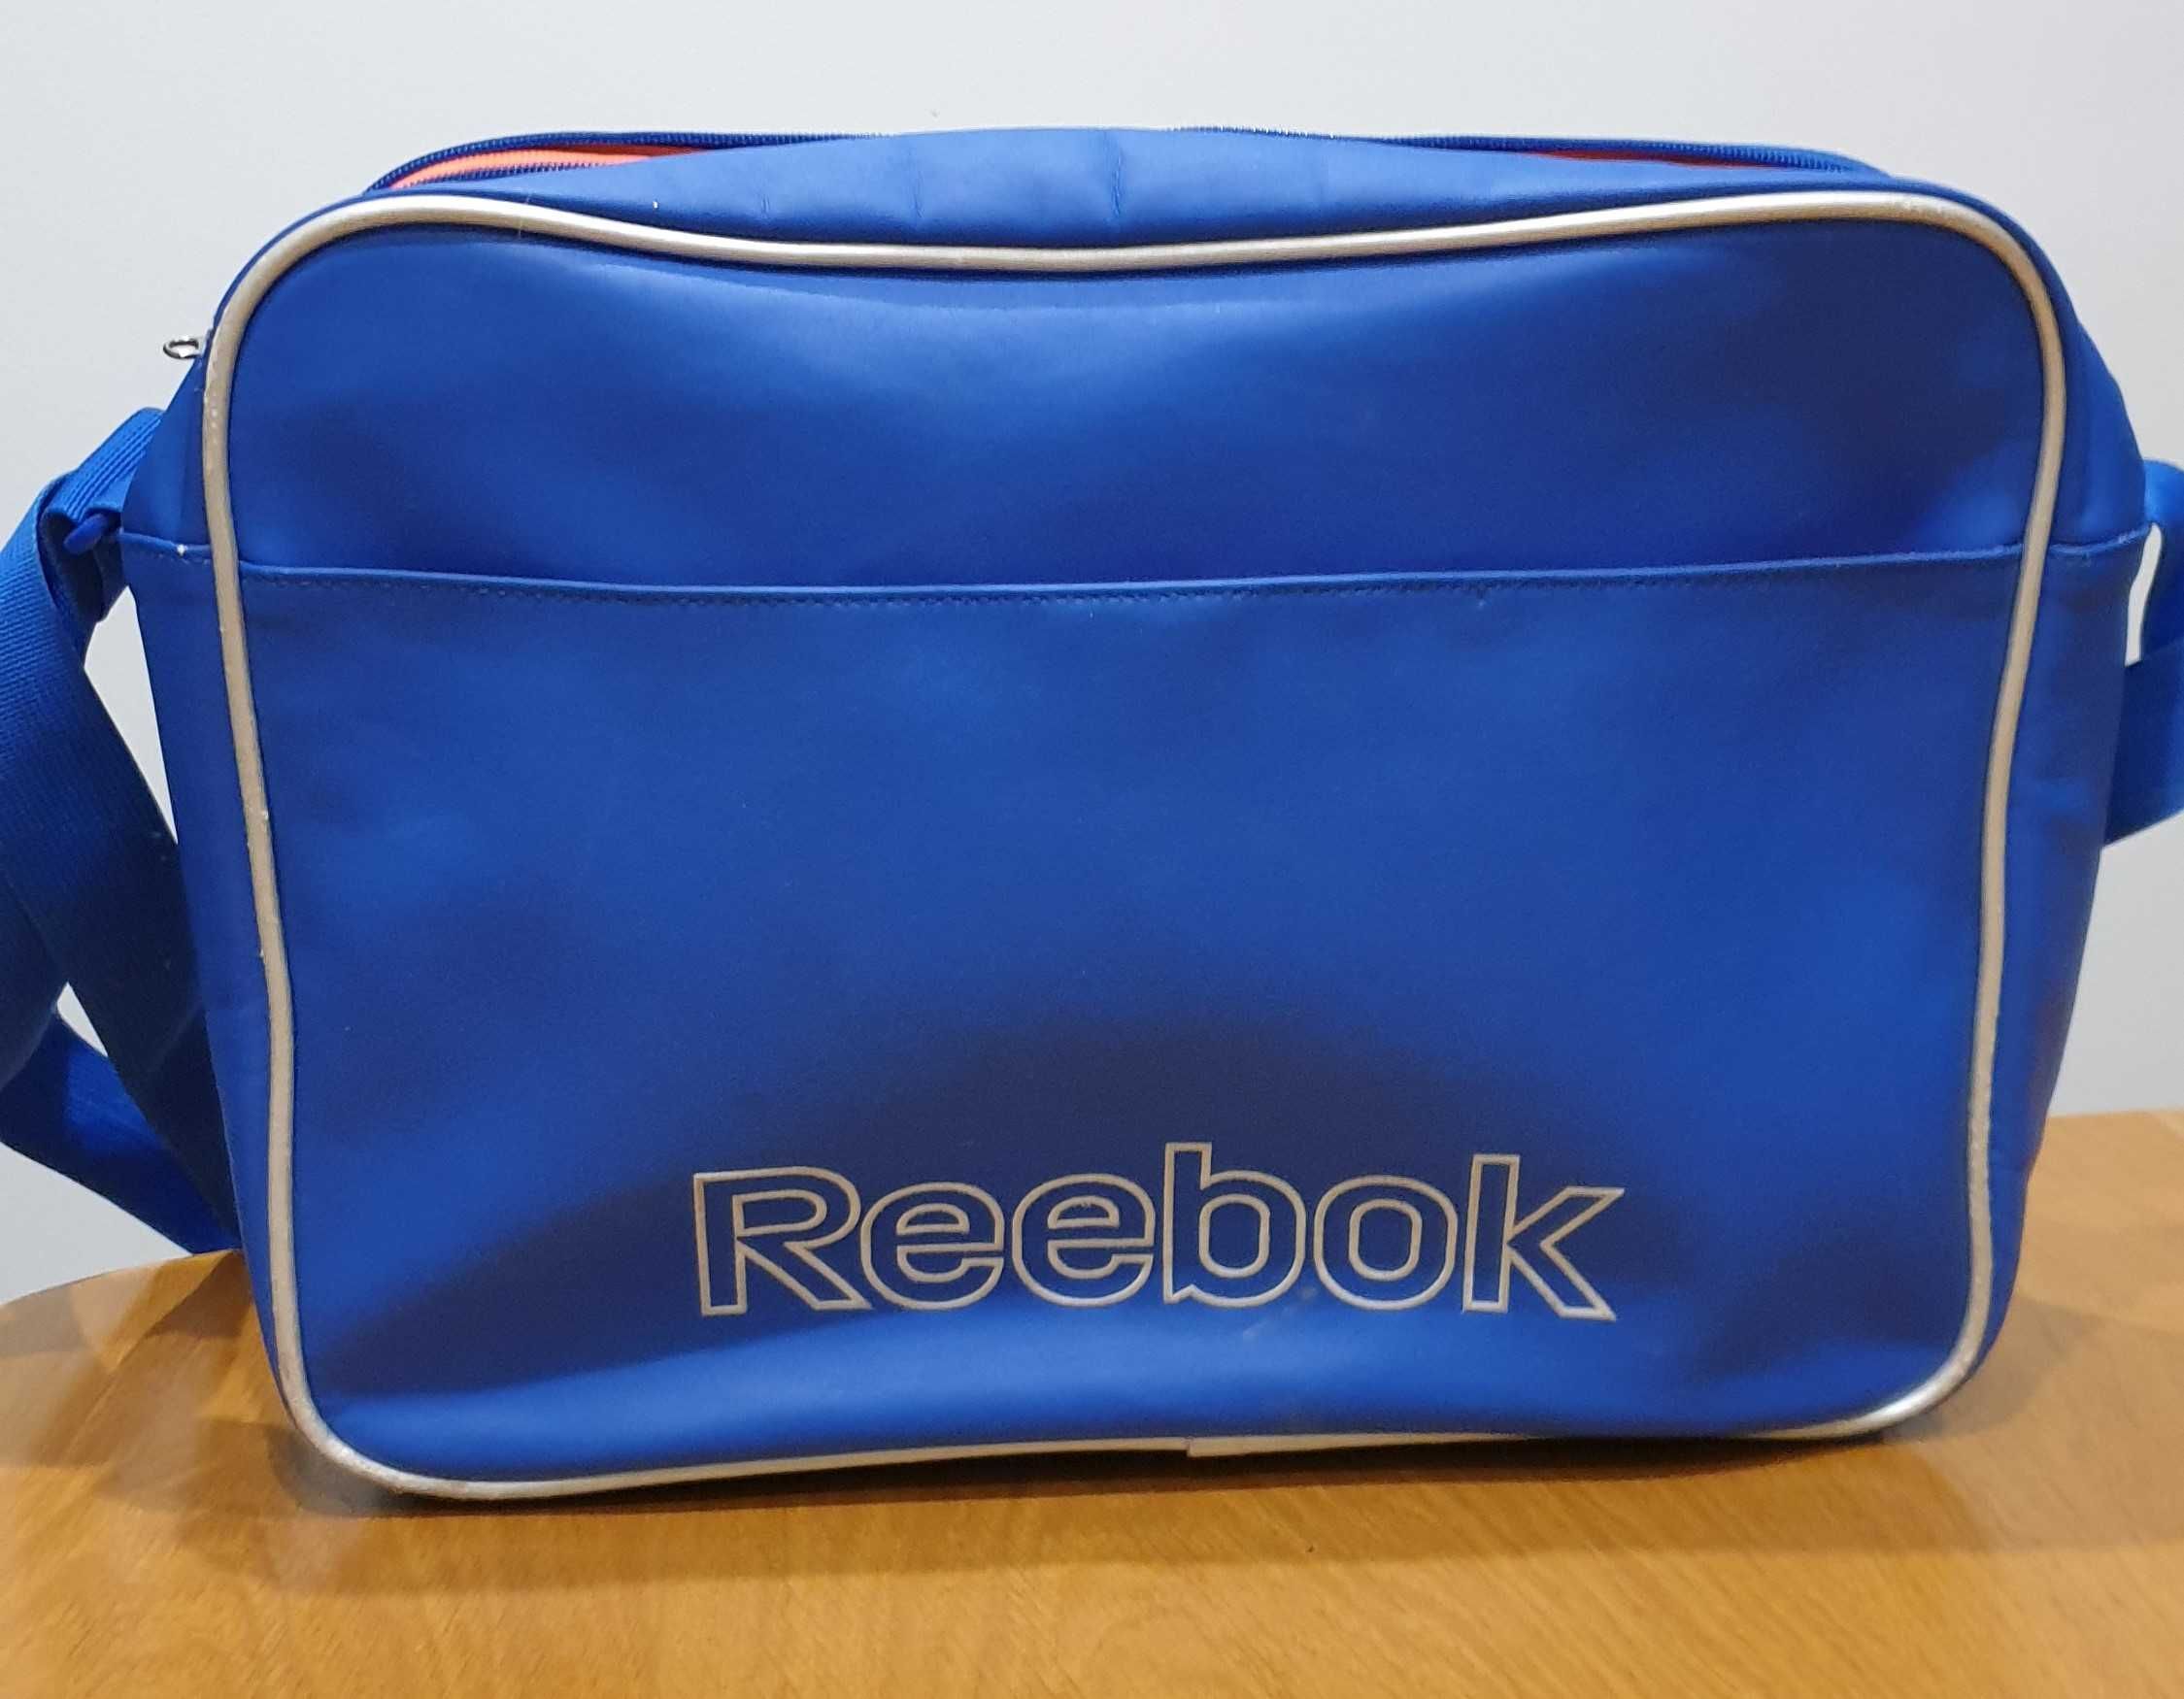 torba na ramię Reebok, niebieska - oldskulowa - używana